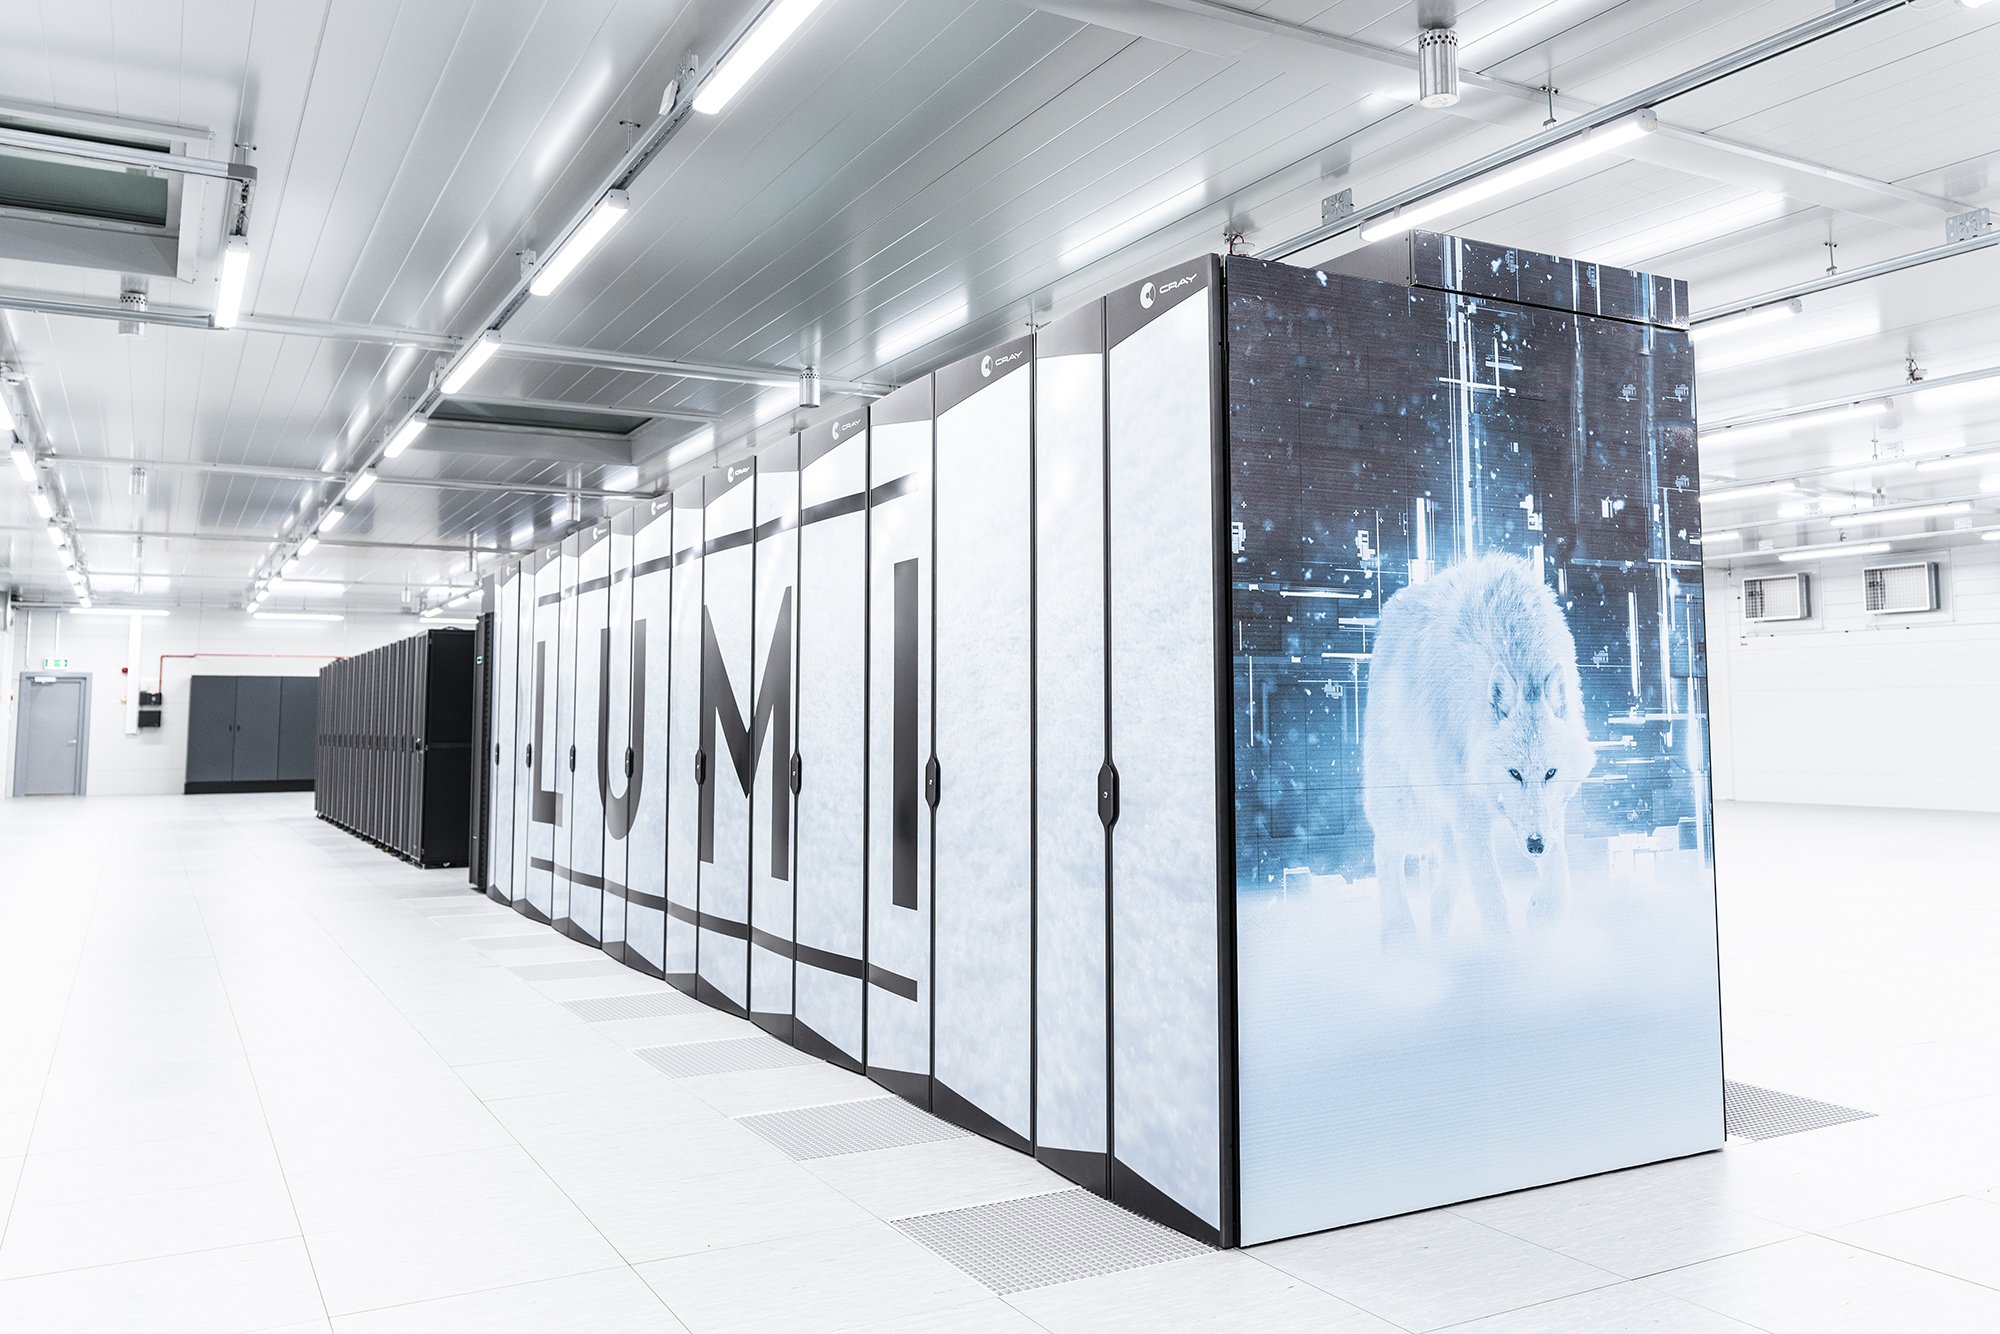  A fost lansat LUMI – supercomputerul cel mai rapid şi mai eficient energetic din Europa (VIDEO)